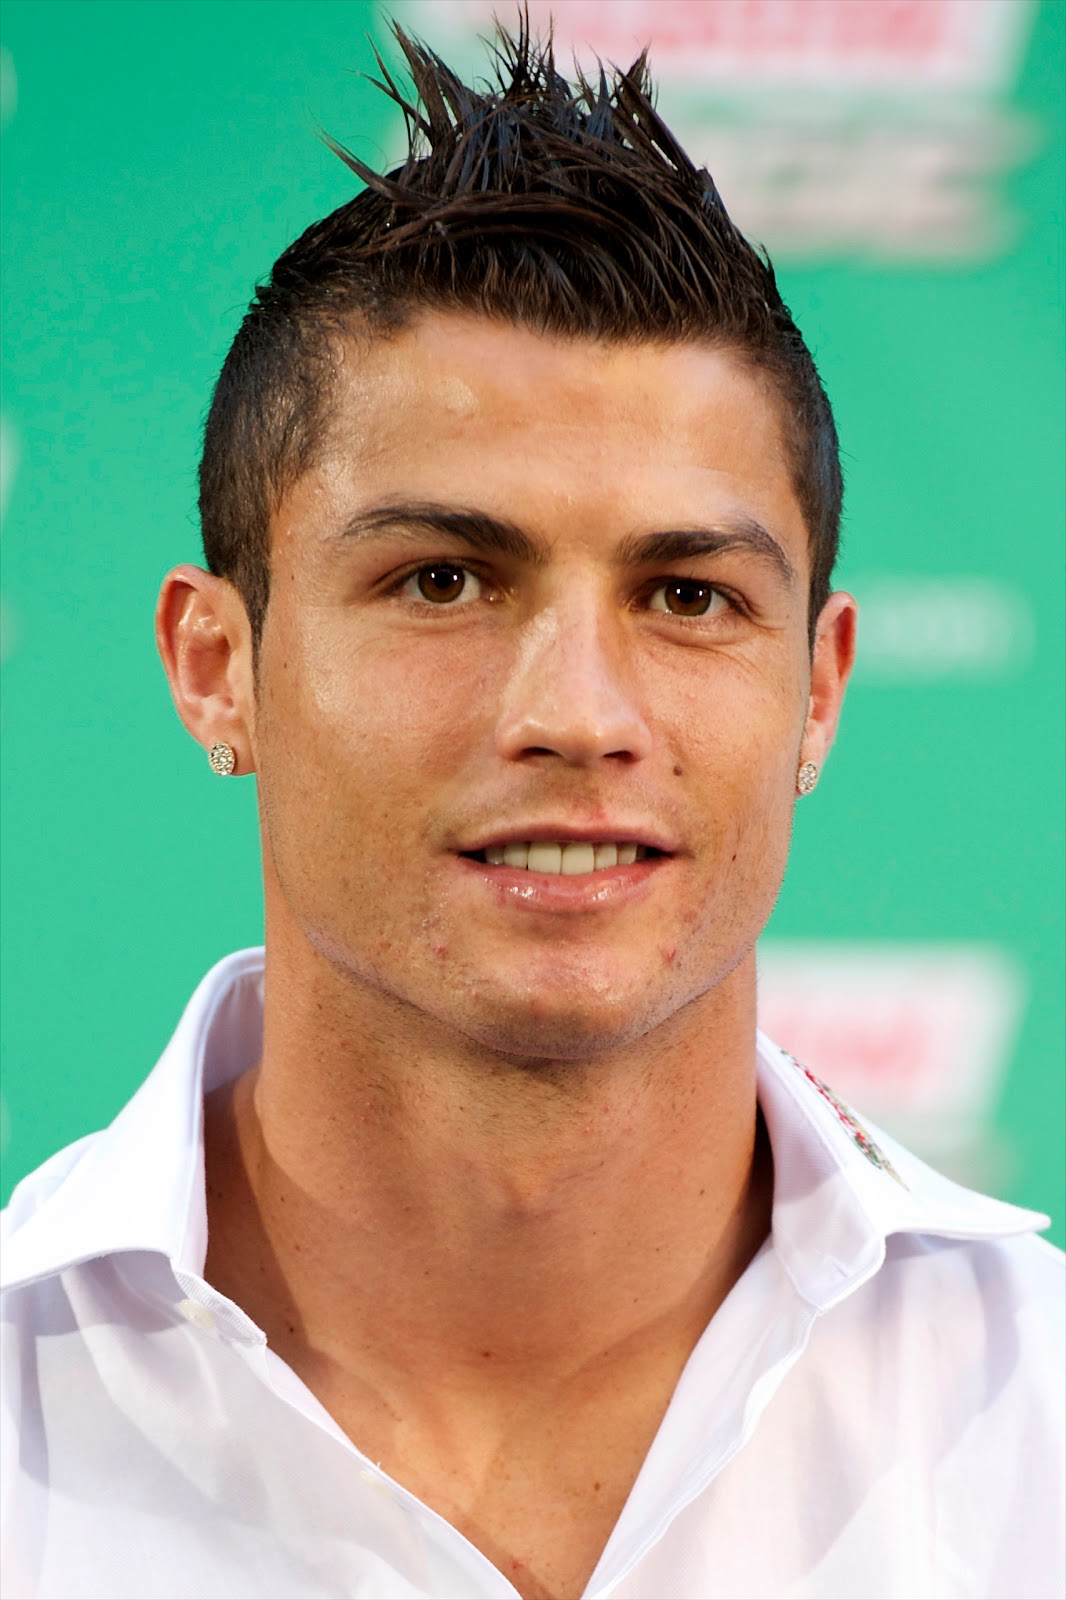 http://2.bp.blogspot.com/-0yvFQ76cGeU/T0HN2Sm_m1I/AAAAAAAAAgA/iXyfnJyM4sQ/s1600/Cristiano+Ronaldo.jpg